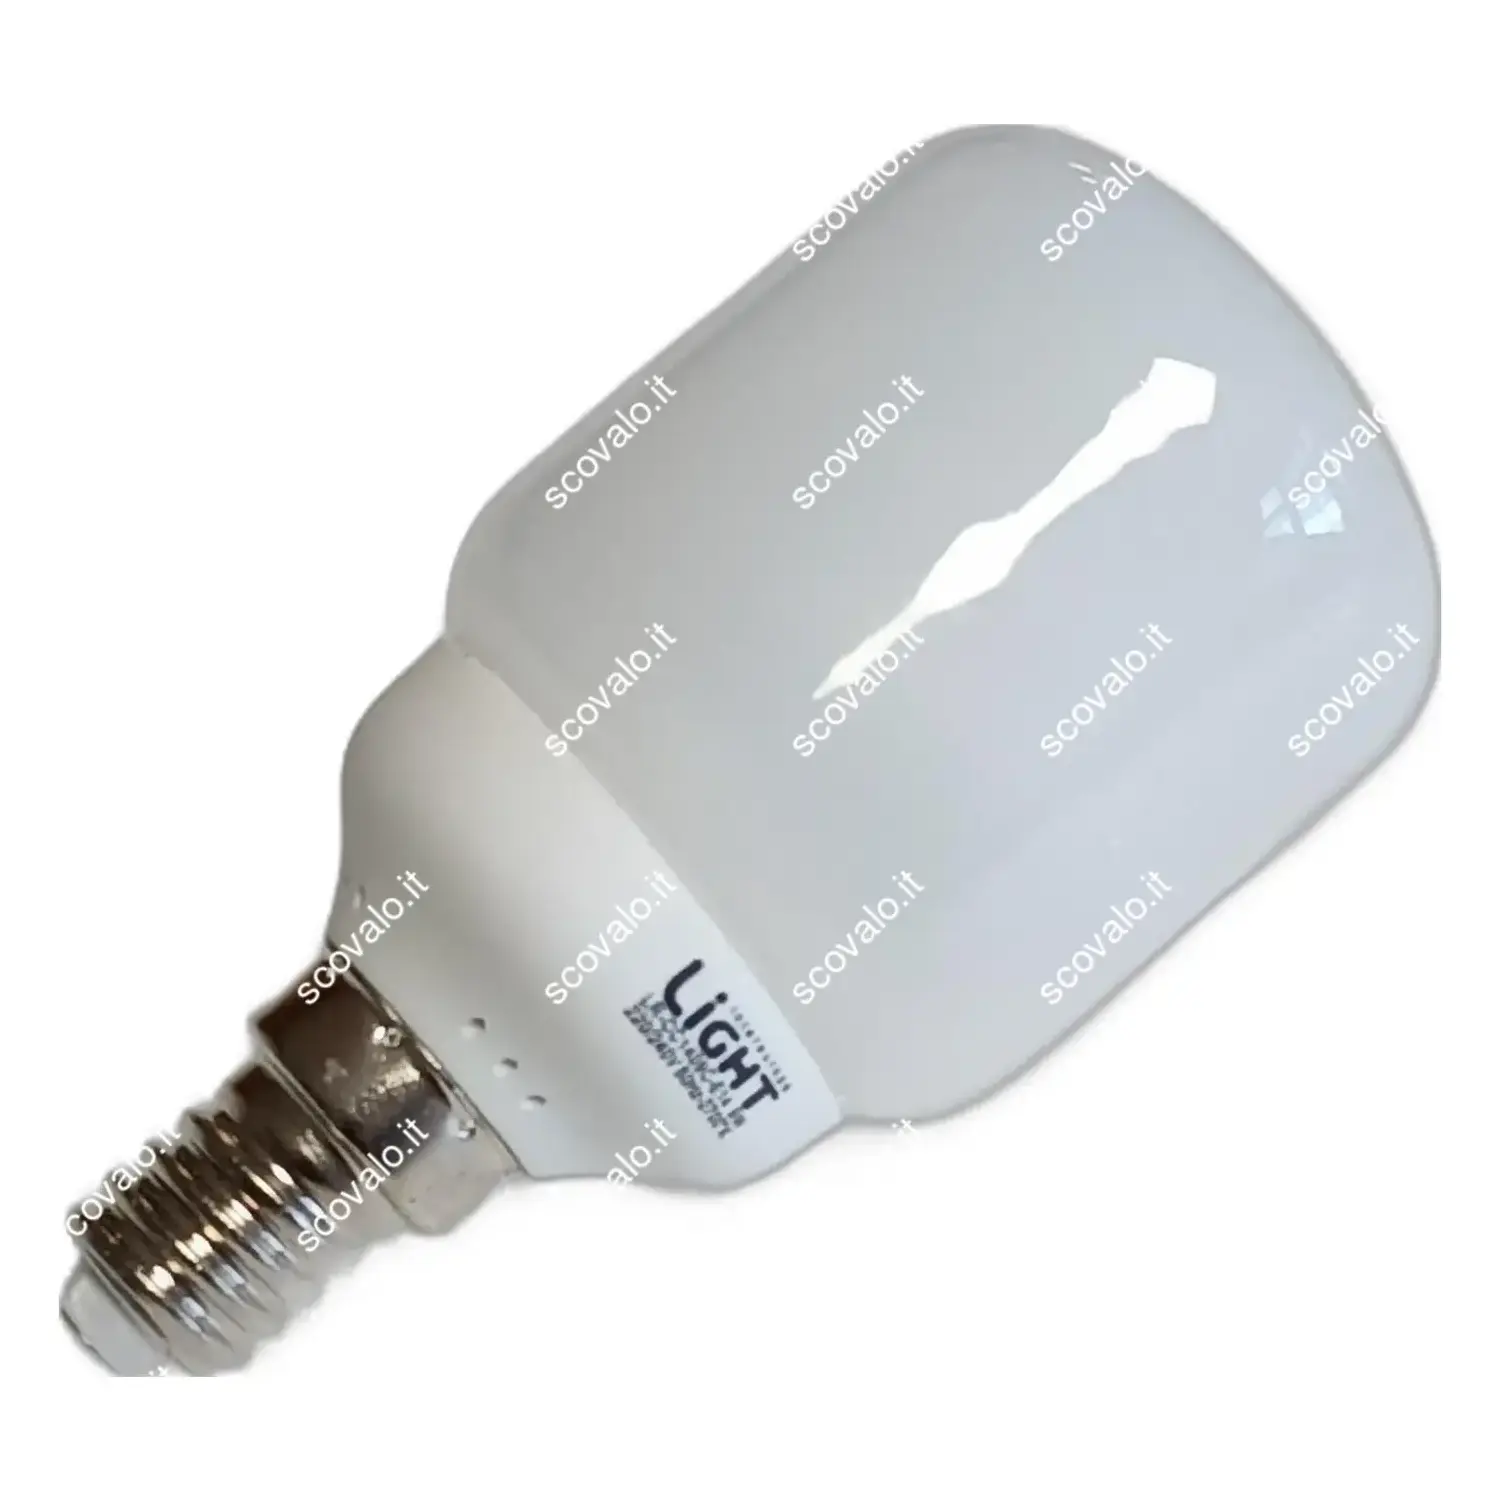 immagine del prodotto lampadina risparmio energetico fluorescente e14 9 watt bianco caldo